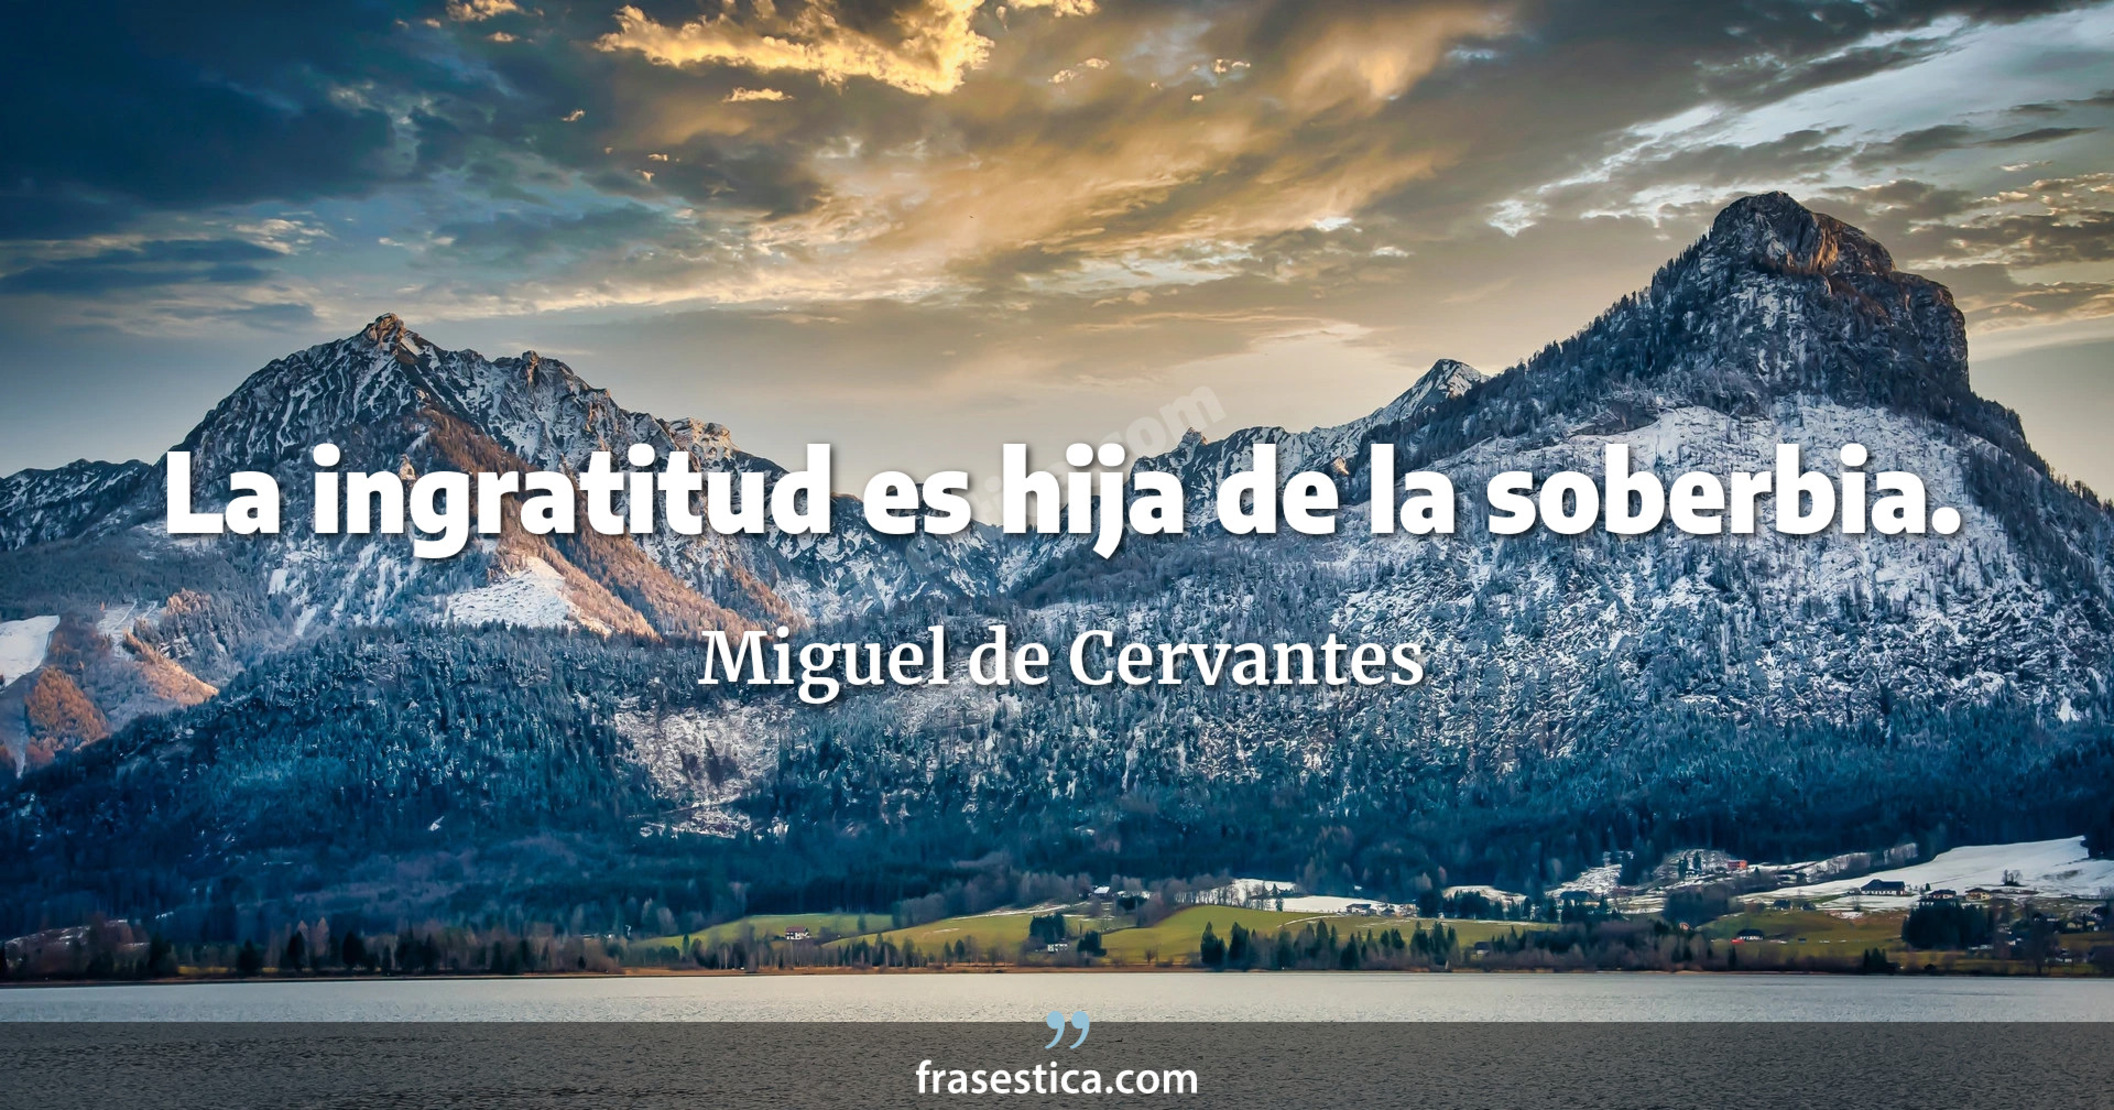 La ingratitud es hija de la soberbia. - Miguel de Cervantes